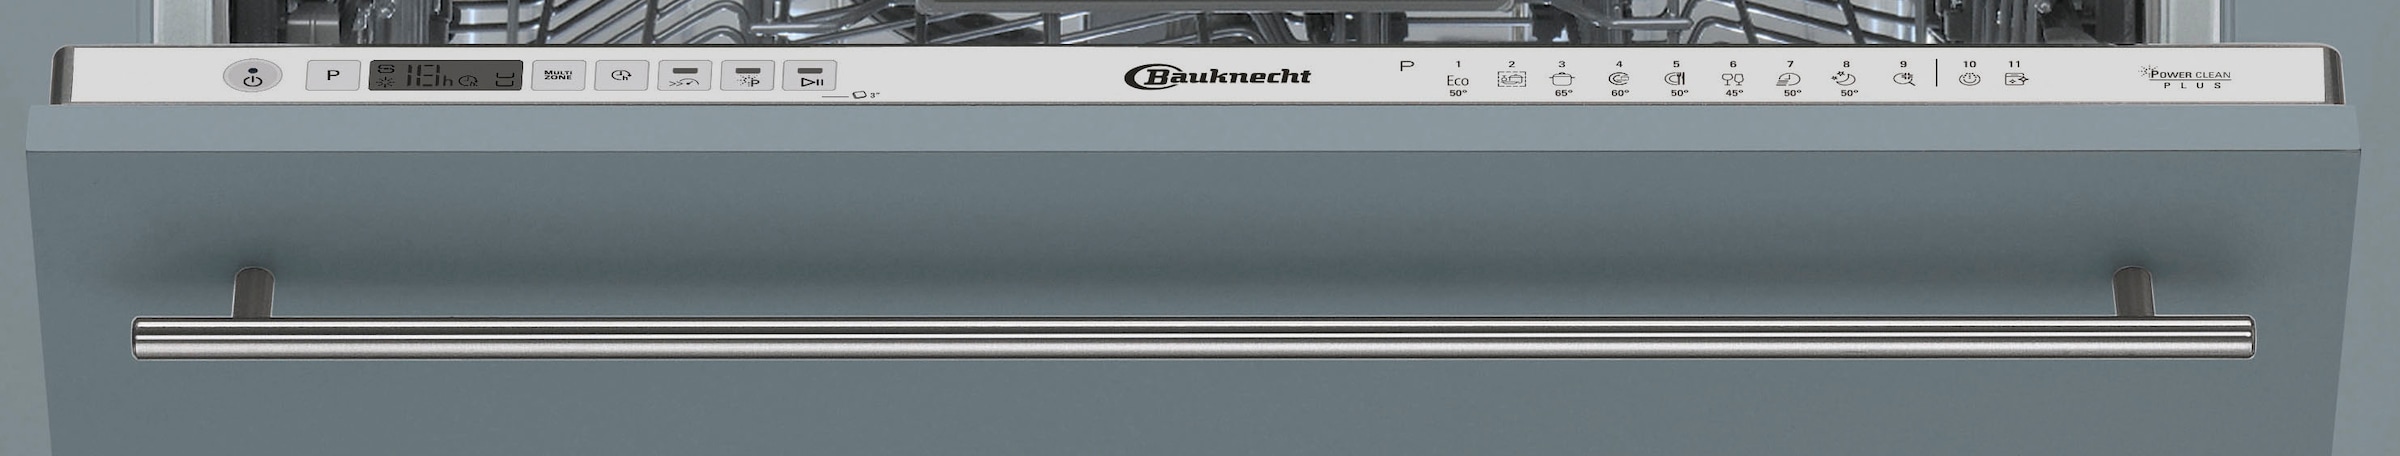 BAUKNECHT vollintegrierbarer Geschirrspüler »BCIO 3T341 BCIO 3T341 OTTO PLET, 14 bei jetzt PLET«, Maßgedecke